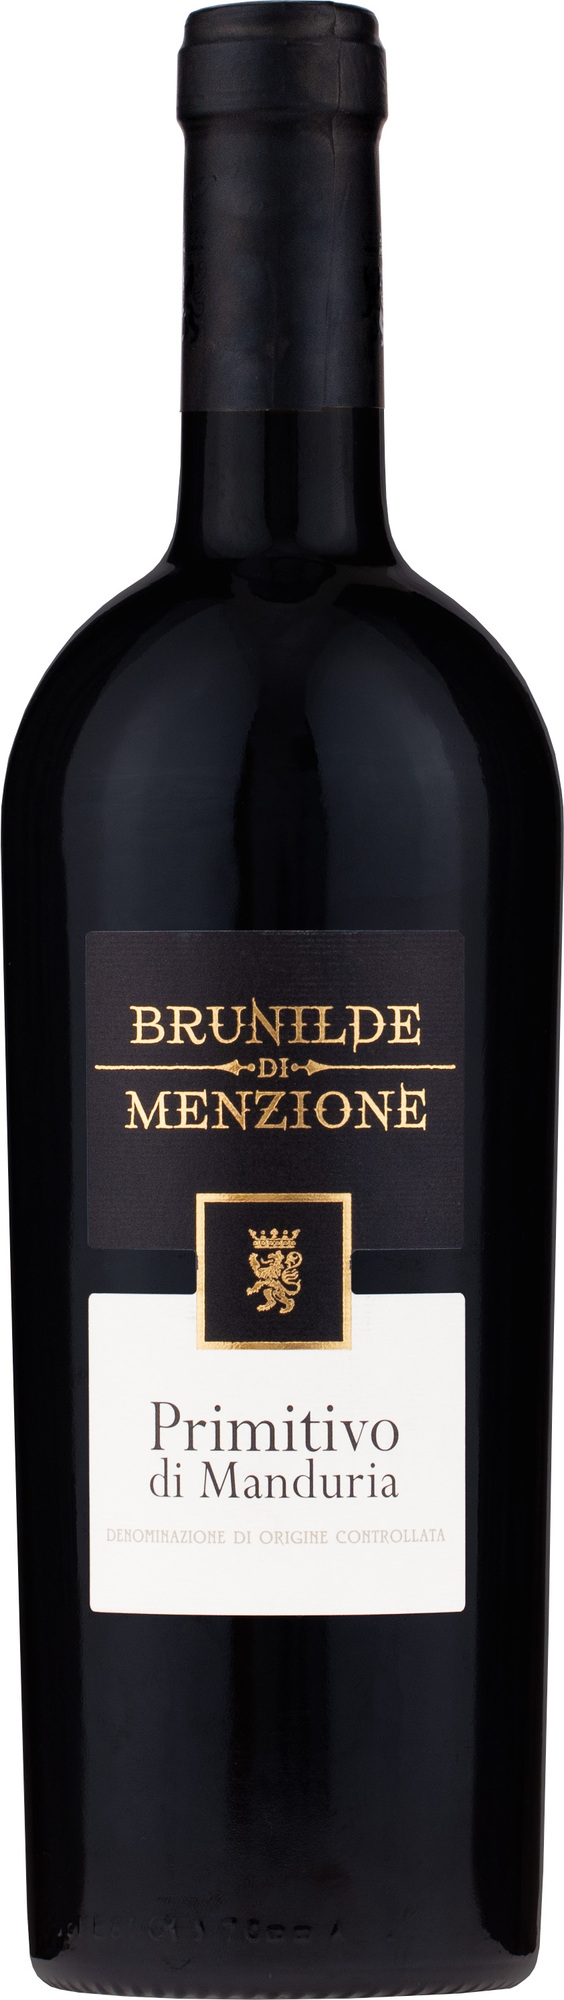 Primitivo di Manduria D.O.C. Brunilde Menzione Bondston | di Red Wine 